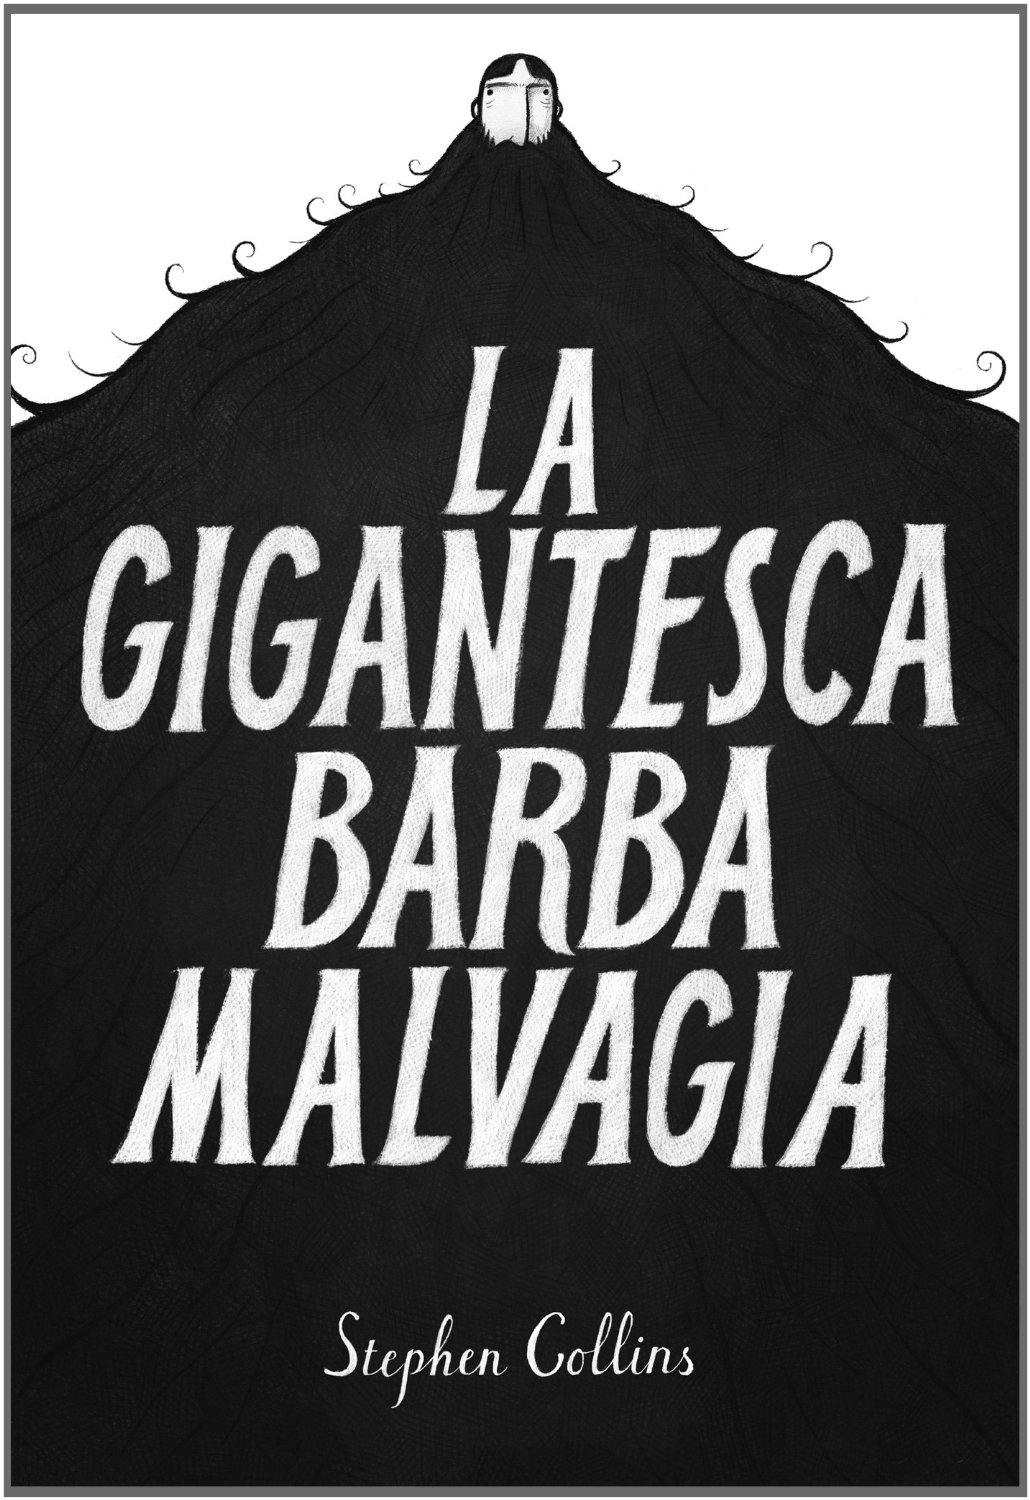 La gigantesca barba malvagia Book Cover